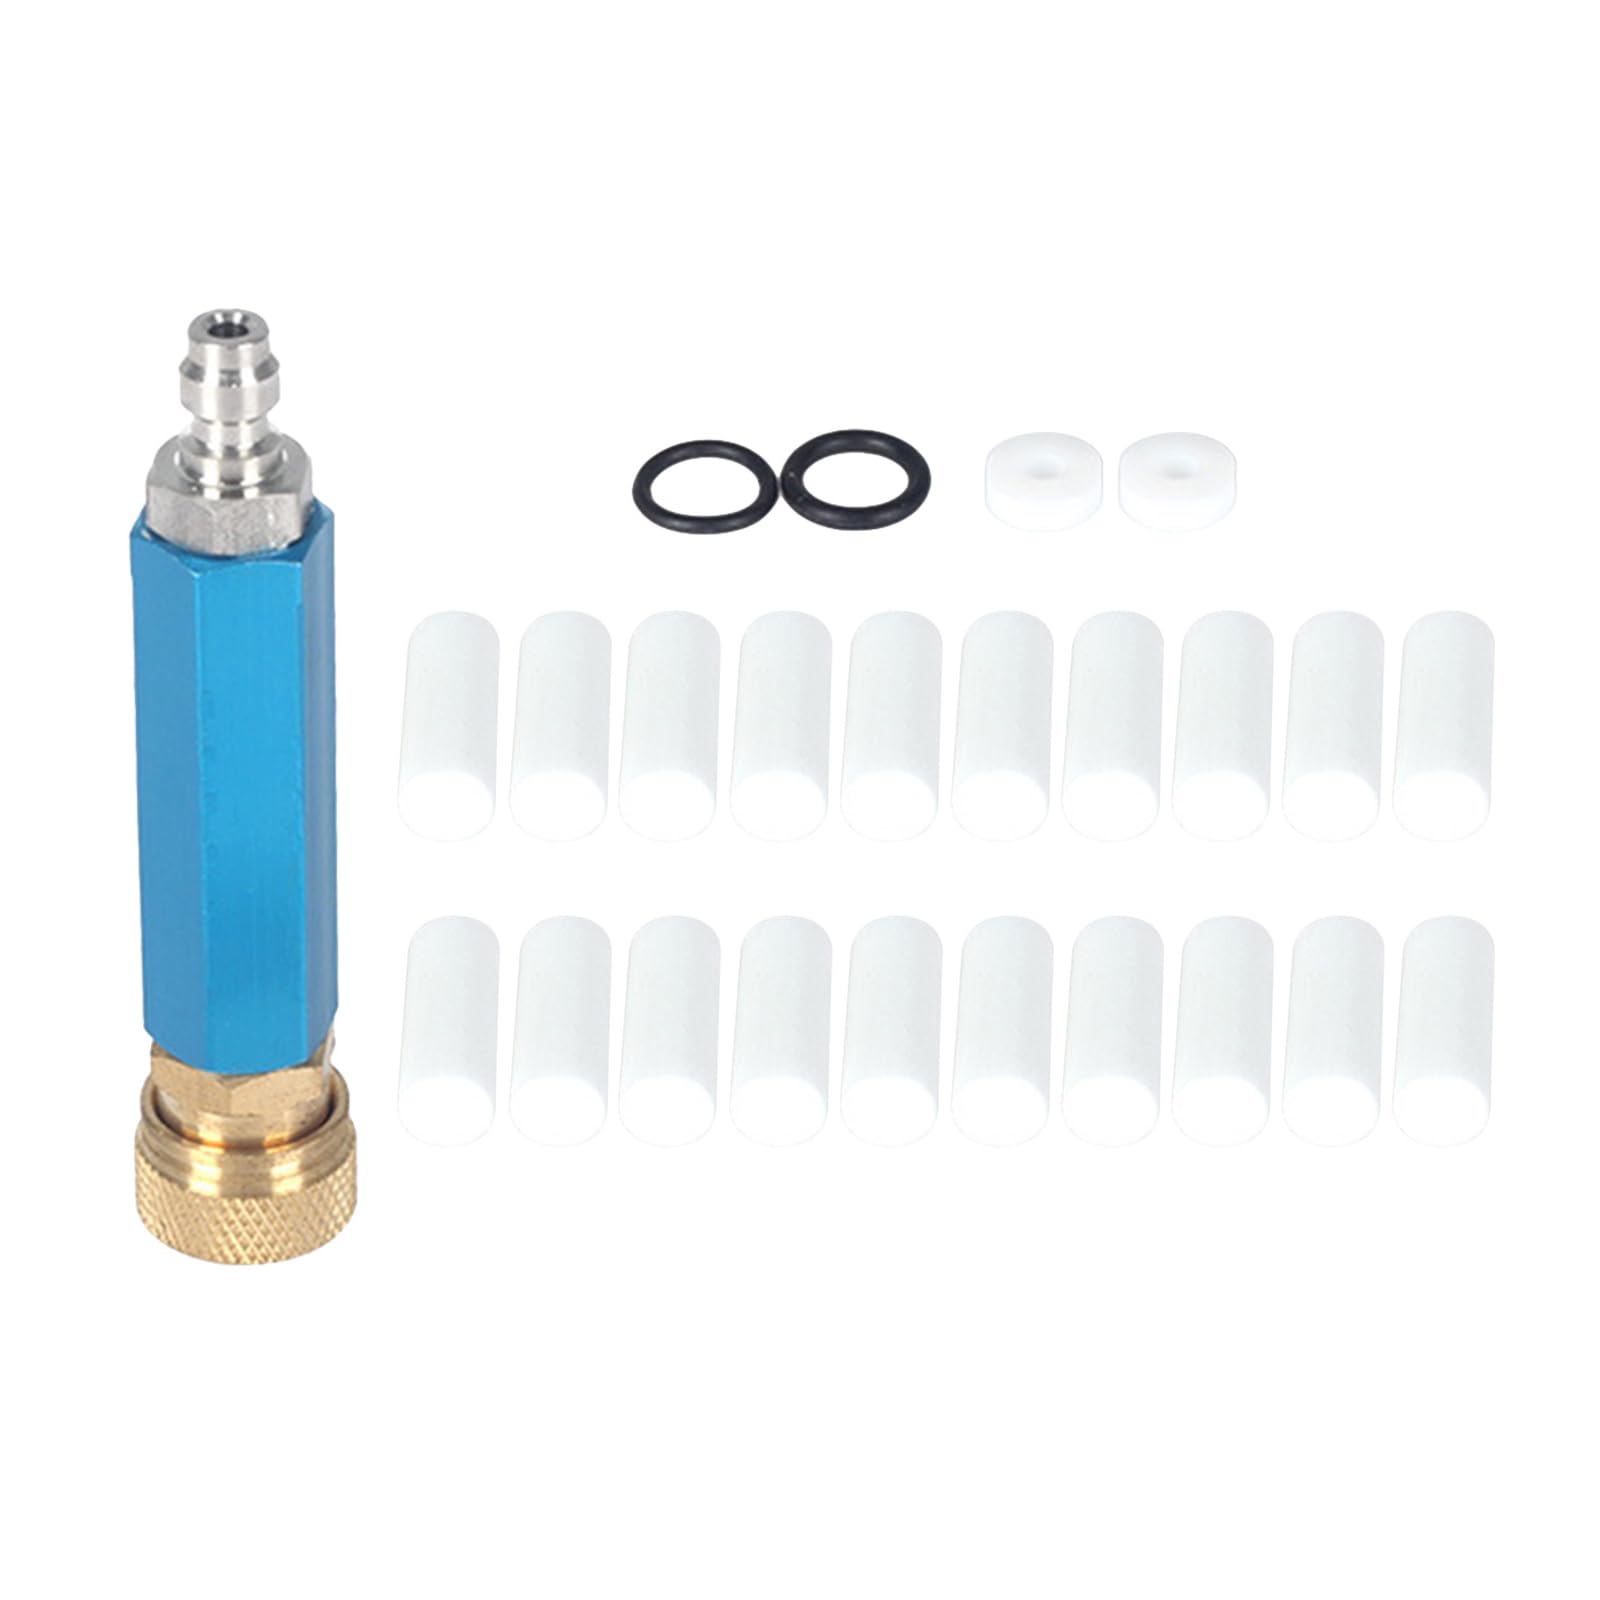 Luftkompressor Filter Wasser- und Ölabscheider Regler 30Mpa Hochdruckluftfilter Tauchabscheider einfach zu bedienen von Fhsqwernm